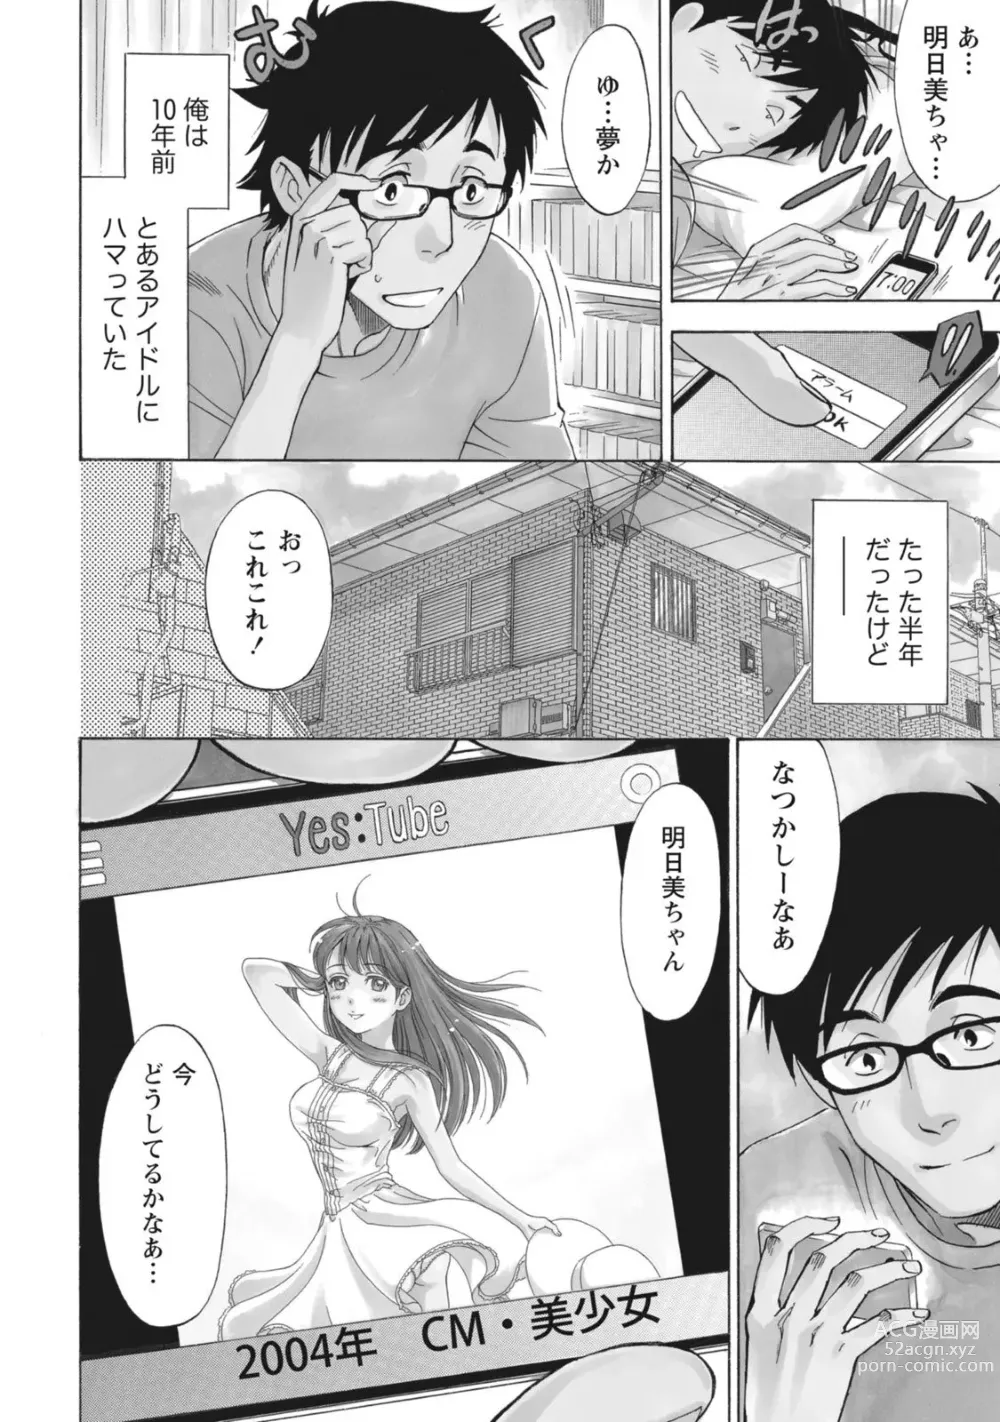 Page 8 of manga Nisekon!